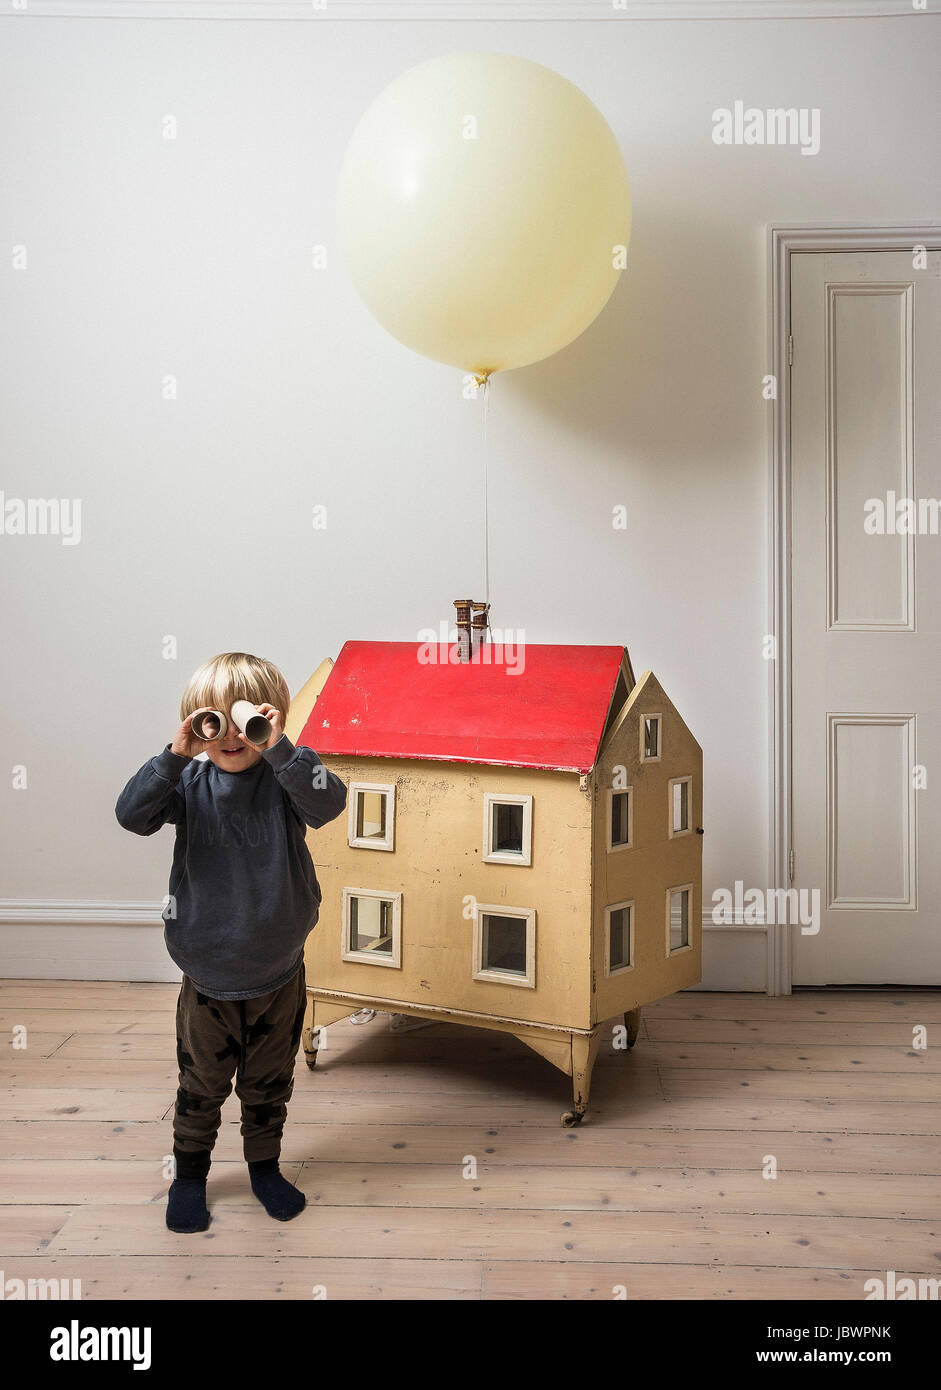 Junge stand neben Puppenhaus Durchsicht Papprohr in die Kamera Stockfoto